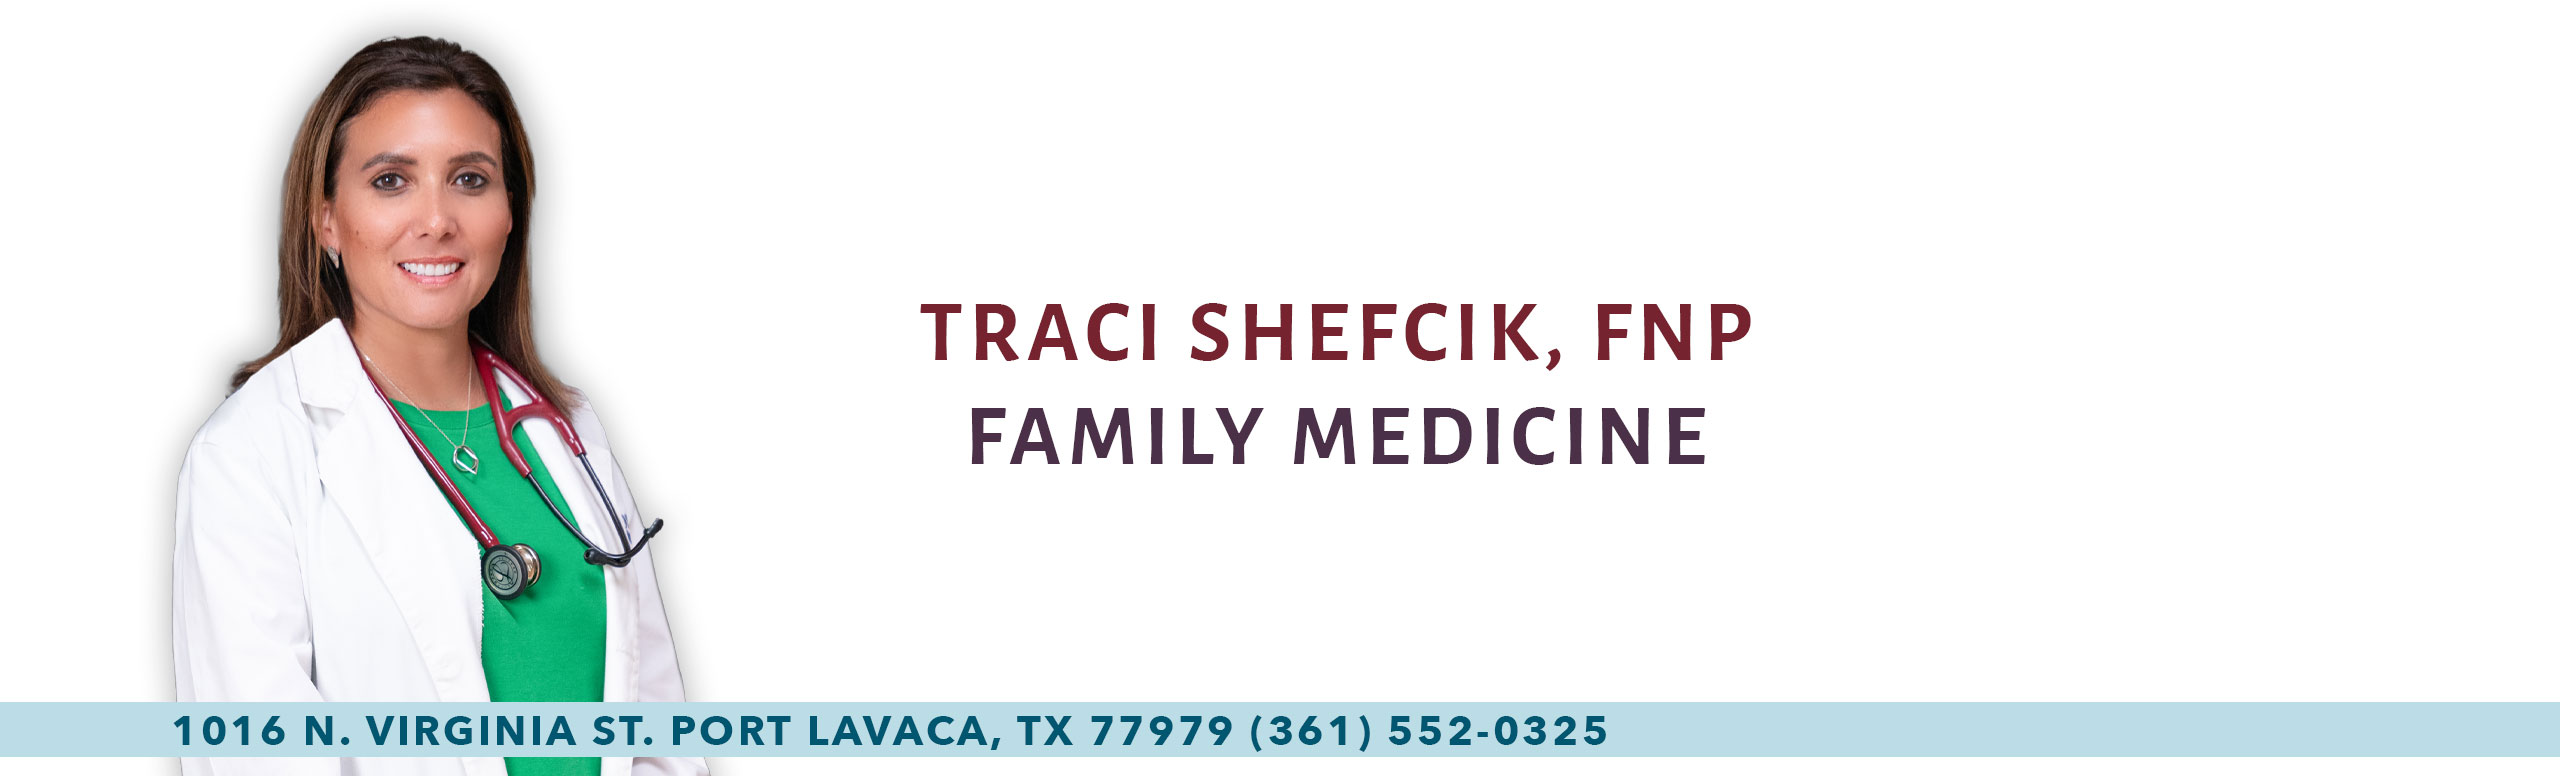 Traci Shefcik, FNP
Family Medicine